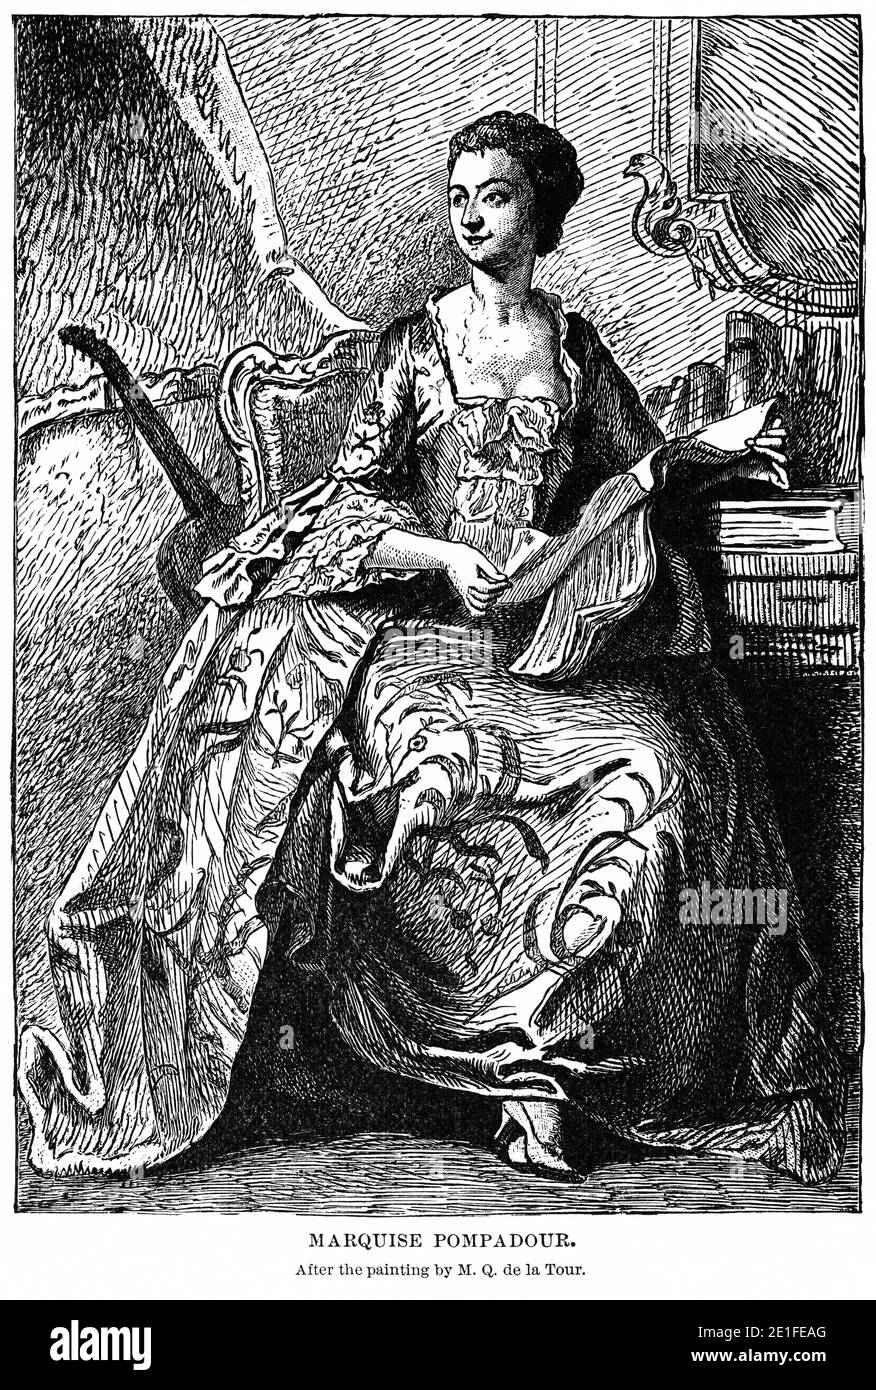 Marquise Pompadour, après la peinture de M.Q. de la Tour, Illustration, Histoire du monde de Ridpath, Volume III, par John Clark Ridpath, LL. D., Merrill & Baker Publishers, New York, 1897 Banque D'Images